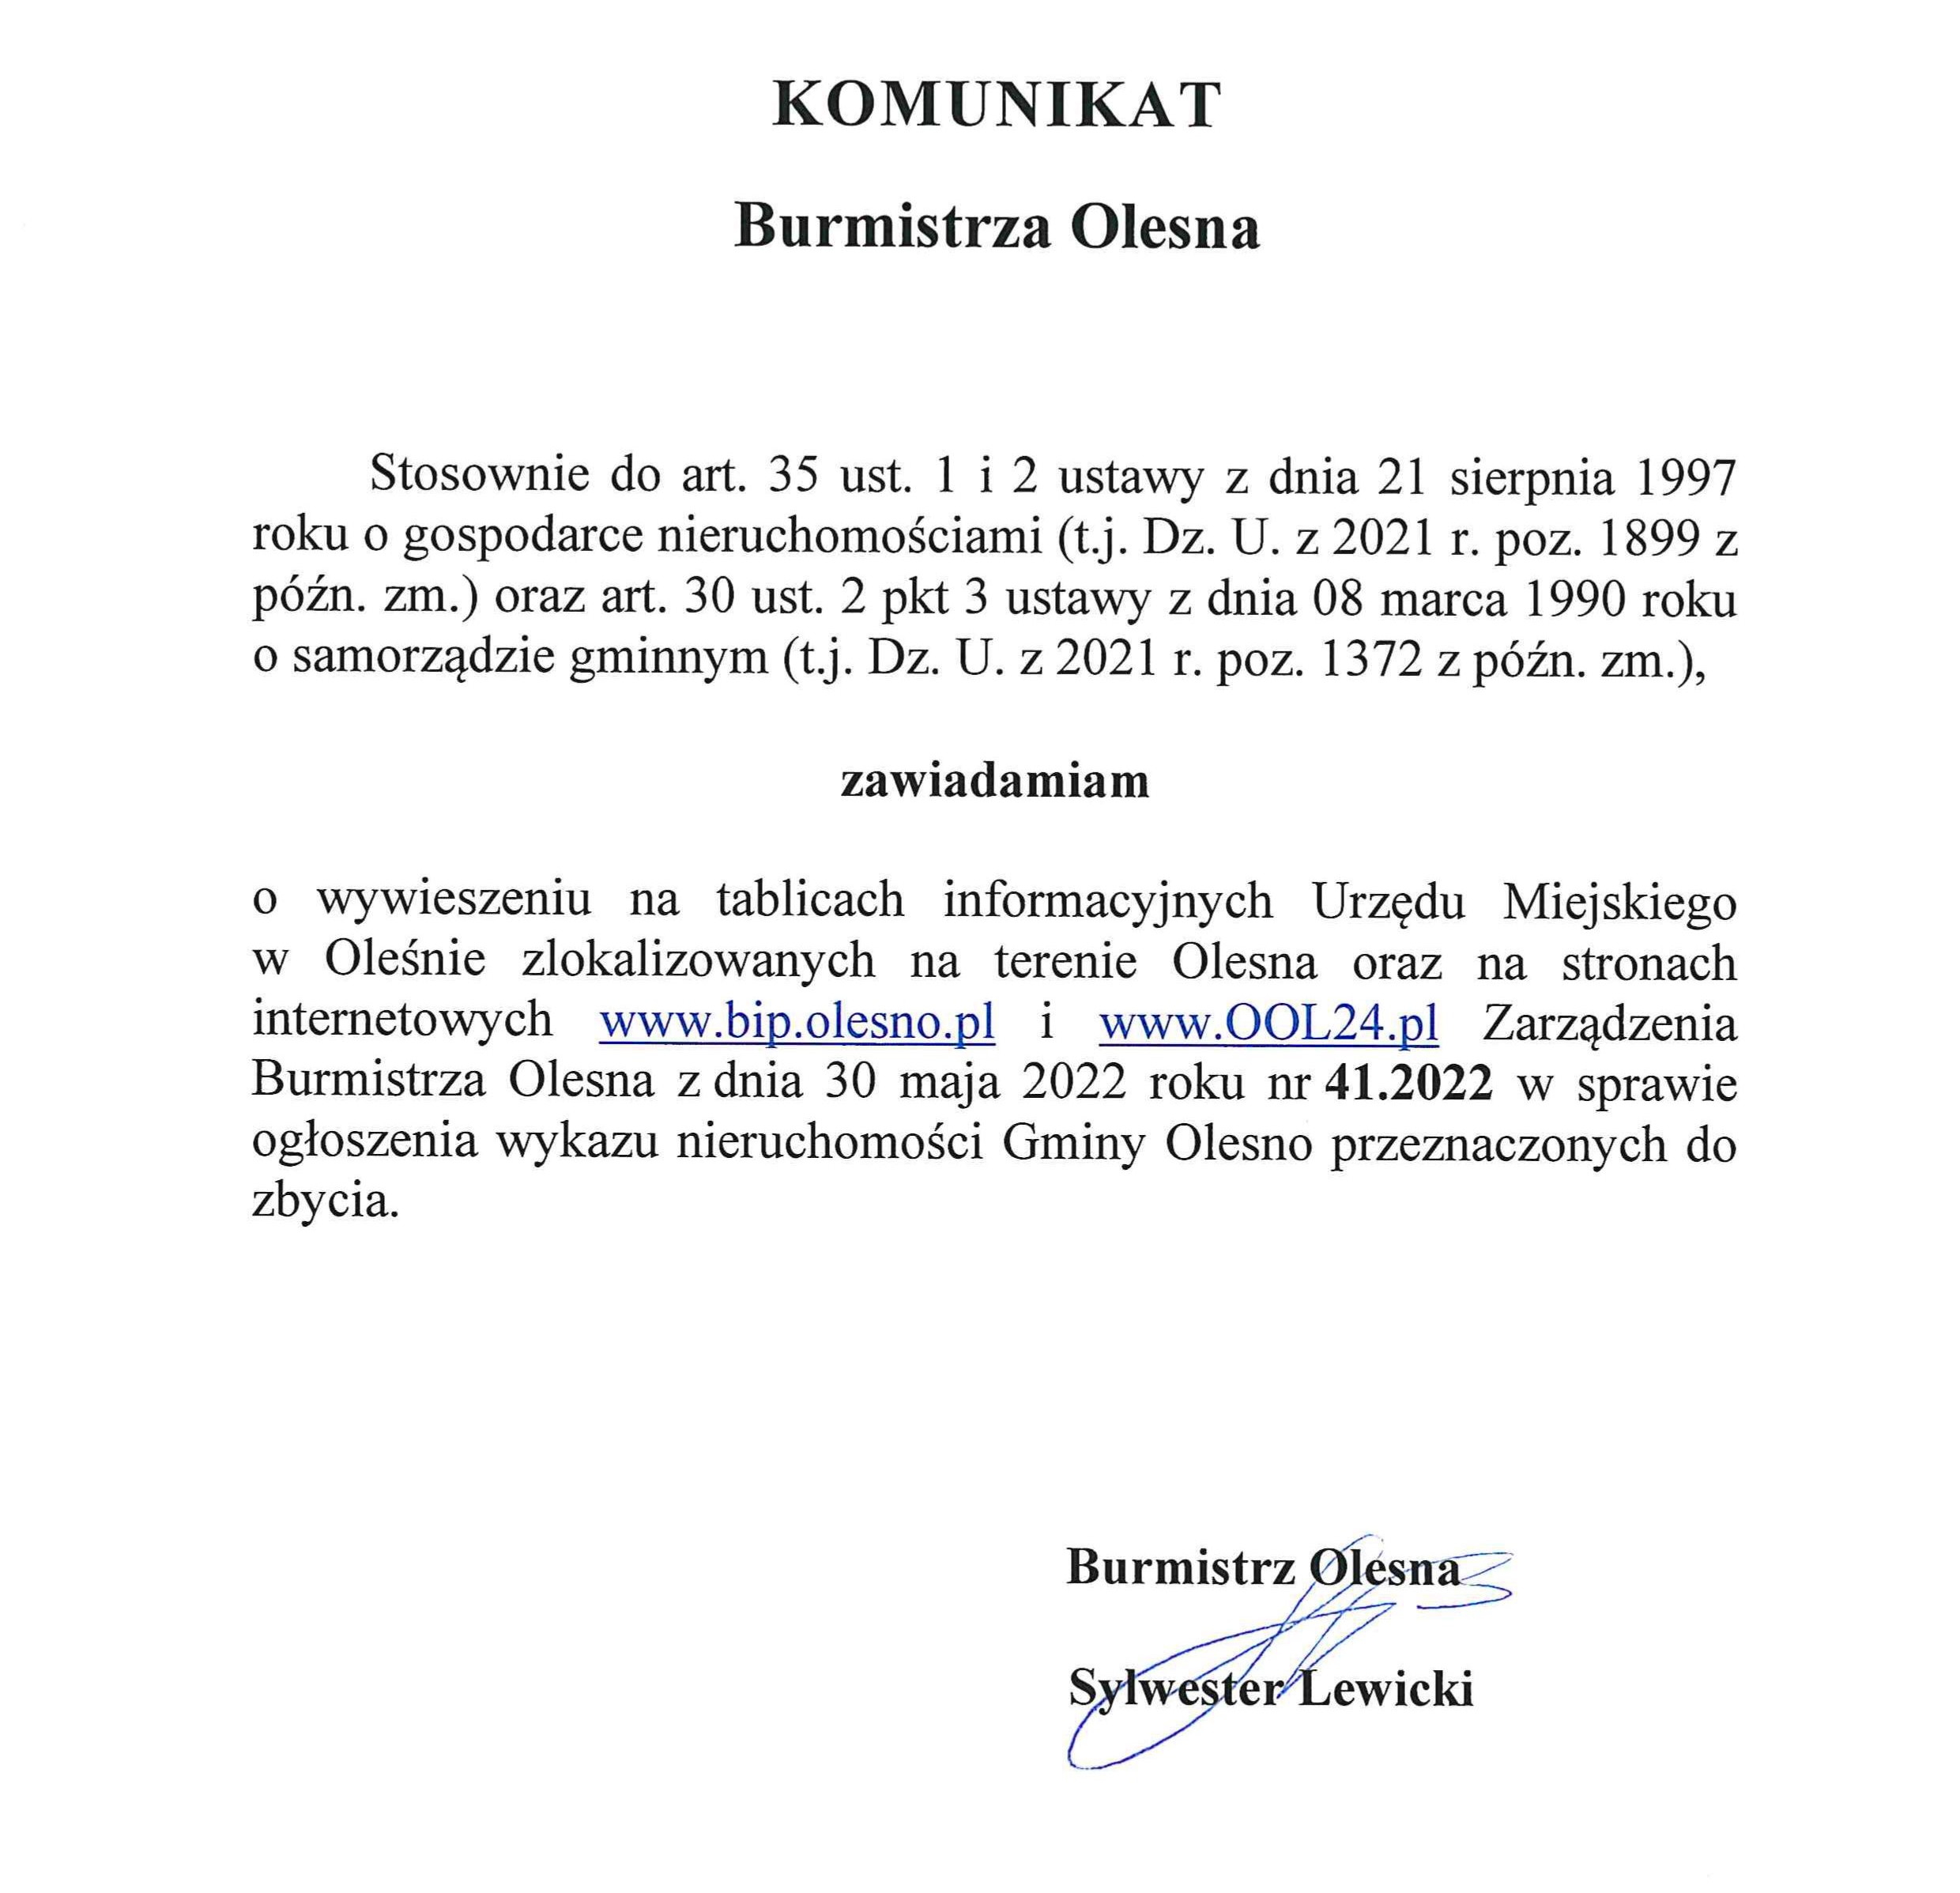 komunikat-burmistrza-olesna-publikacja-zarzadzenia-41-2022-z-30-05-2022-roku